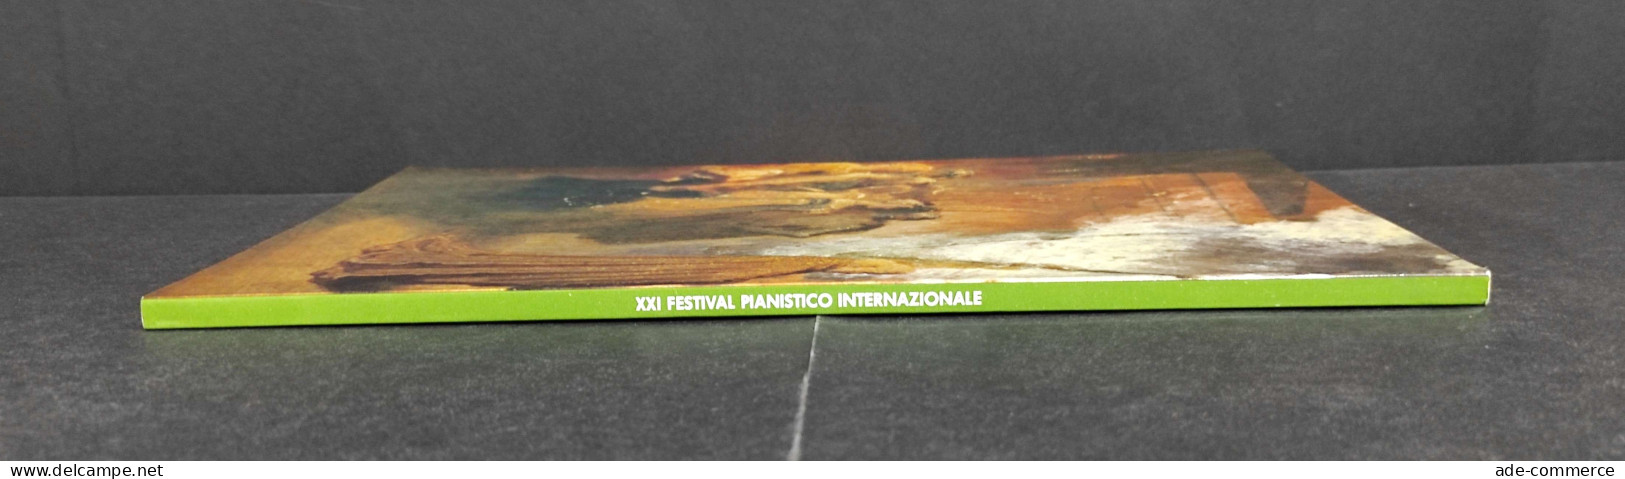 XXI Festival Pianistico Int. - Sonata E Concerto Nell'Epoca Romantica - 1984 - Cinema E Musica